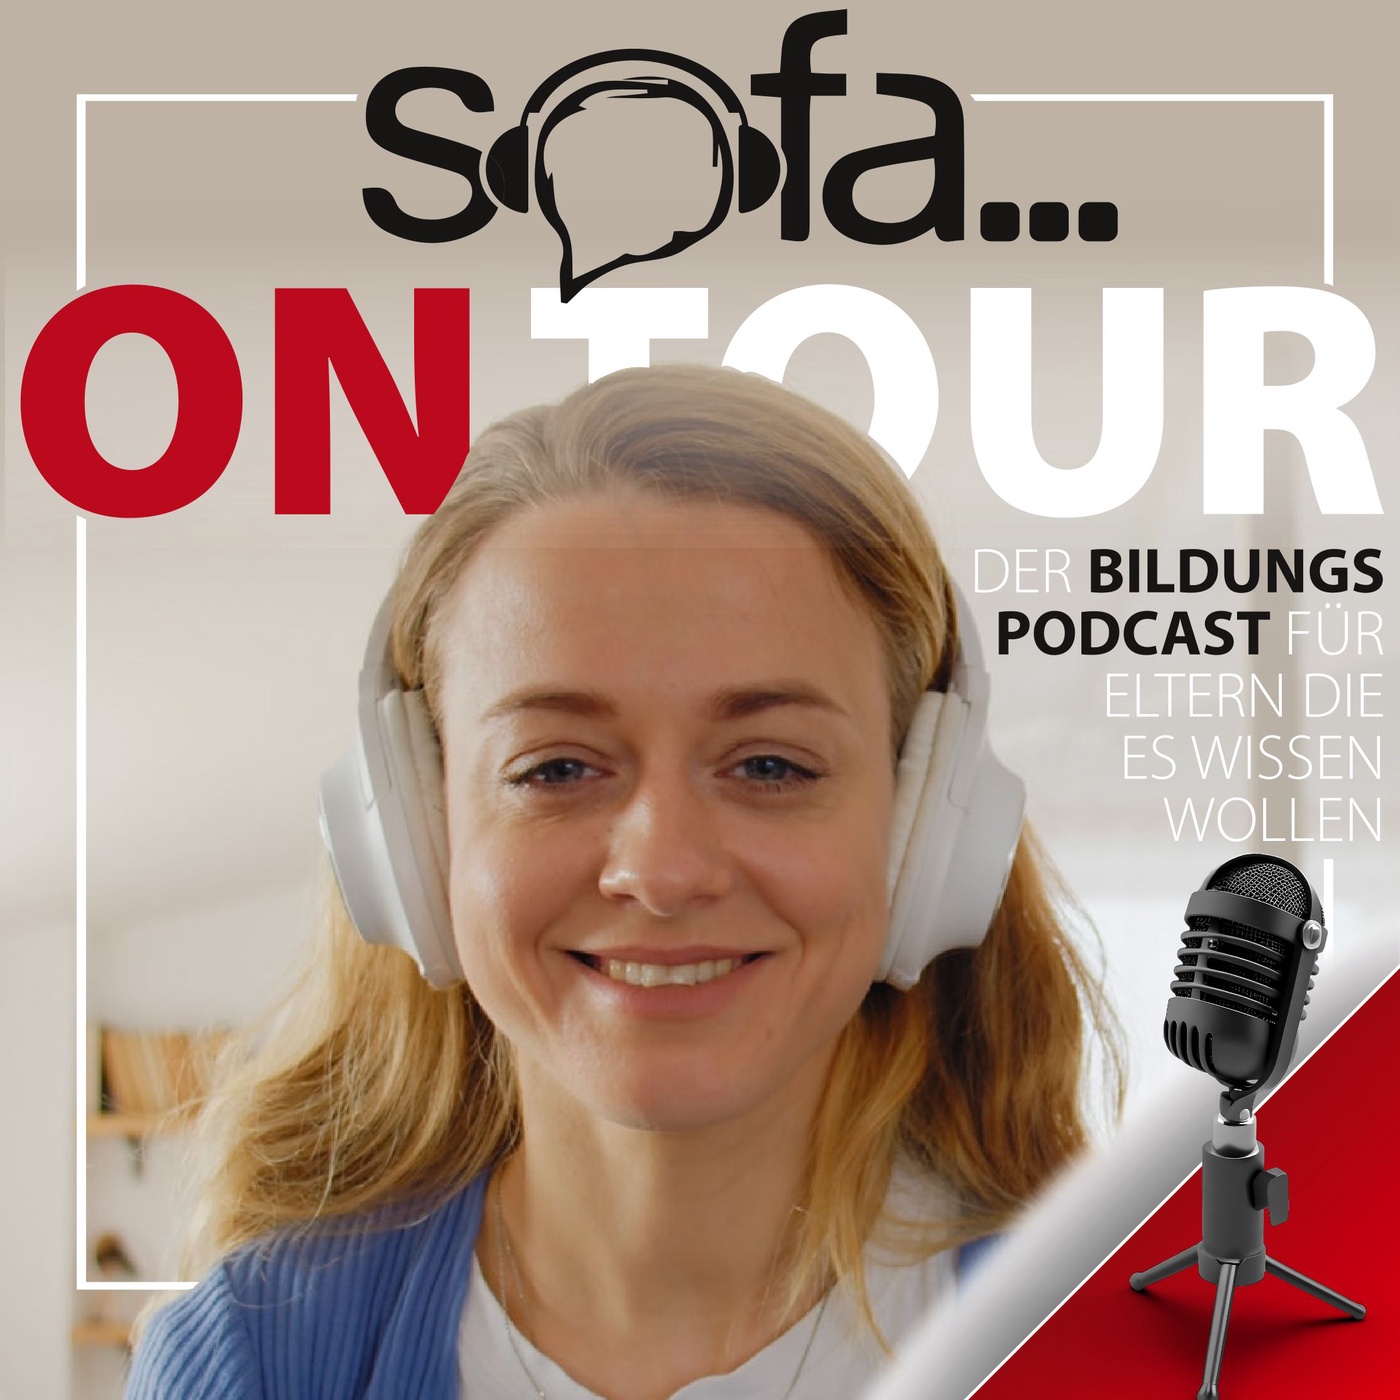 SOFA on Tour - der Bildungspodcast für Eltern, die es wissen wollen